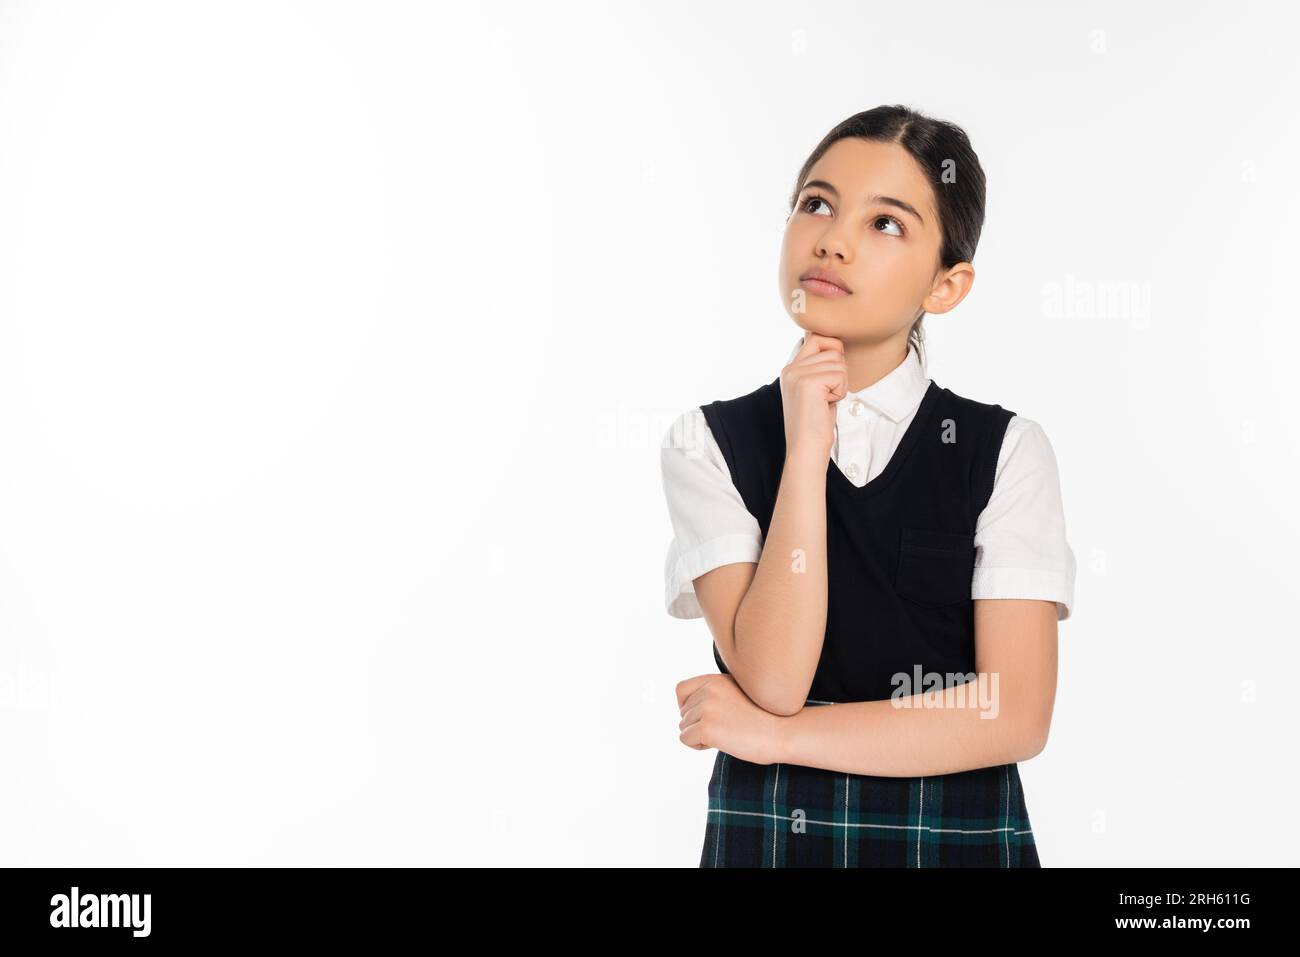 una studentessa pensiva in giubbotto nero che guarda lontano isolata sul bianco, pensante, uniforme scolastica, ragazzina Foto Stock